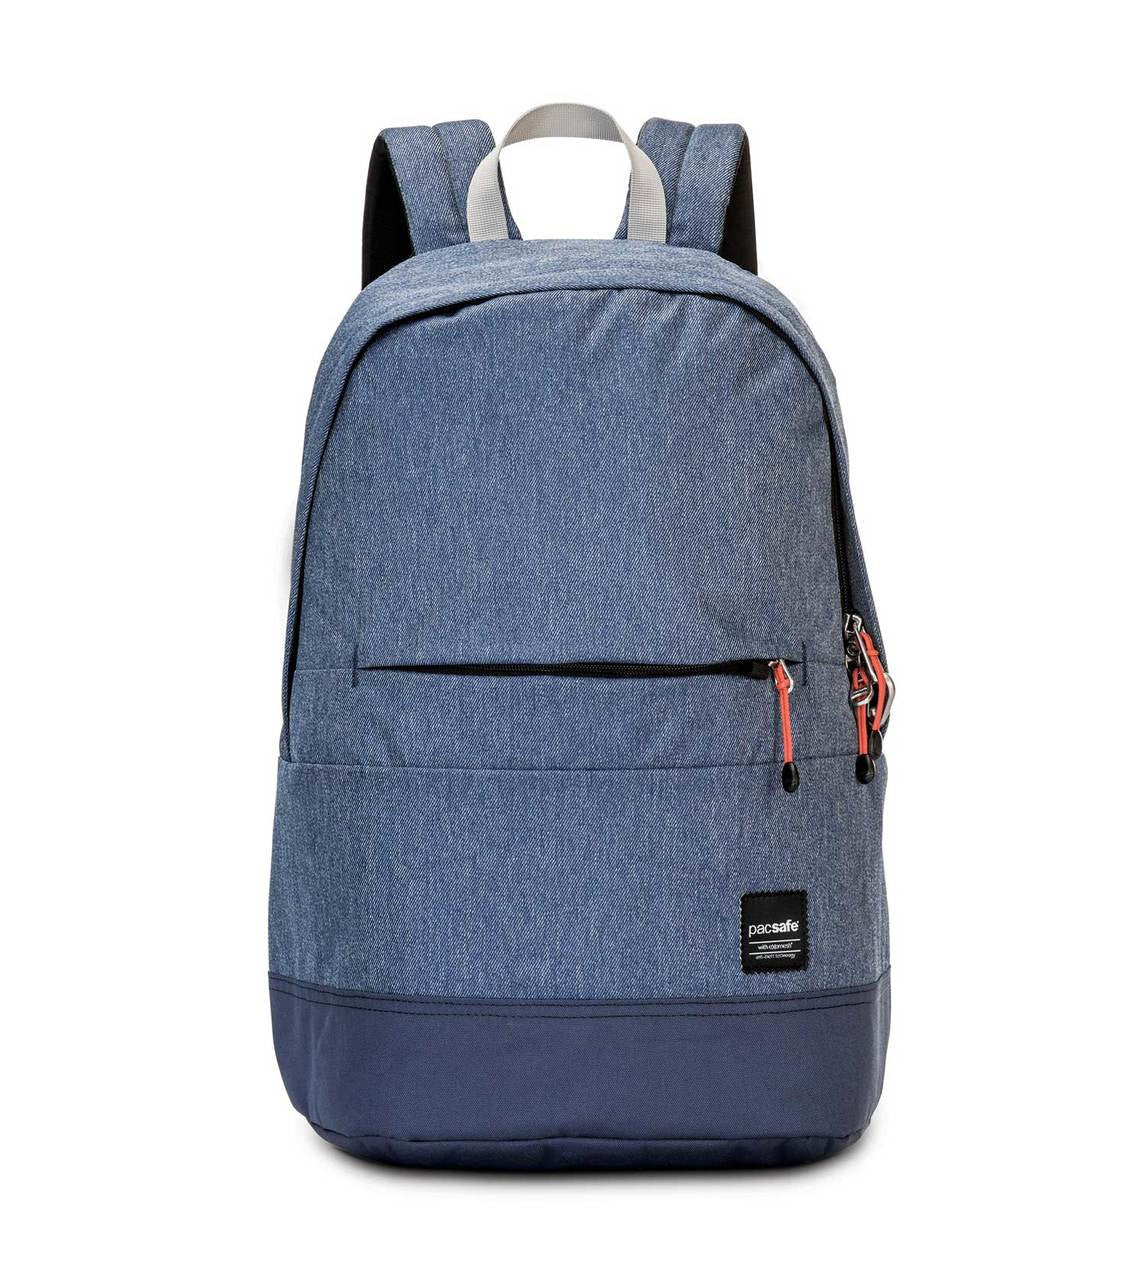 Slingsafe LX300 backpack, denim blue